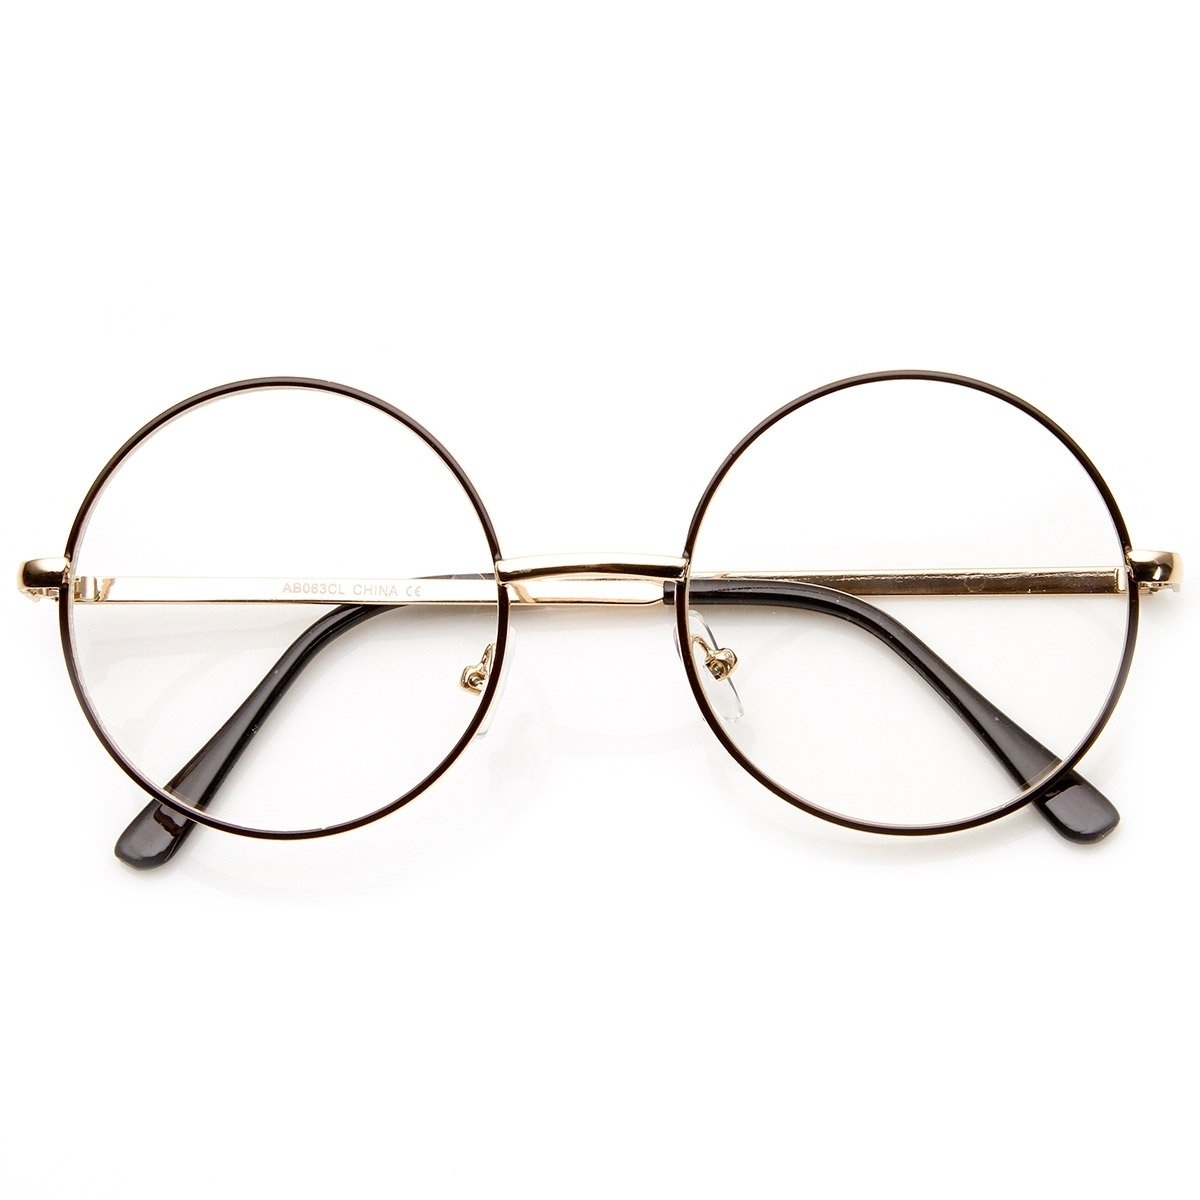 Lennon Mid Size Full Metal Frame Clear Lens Round Glasses - Gold